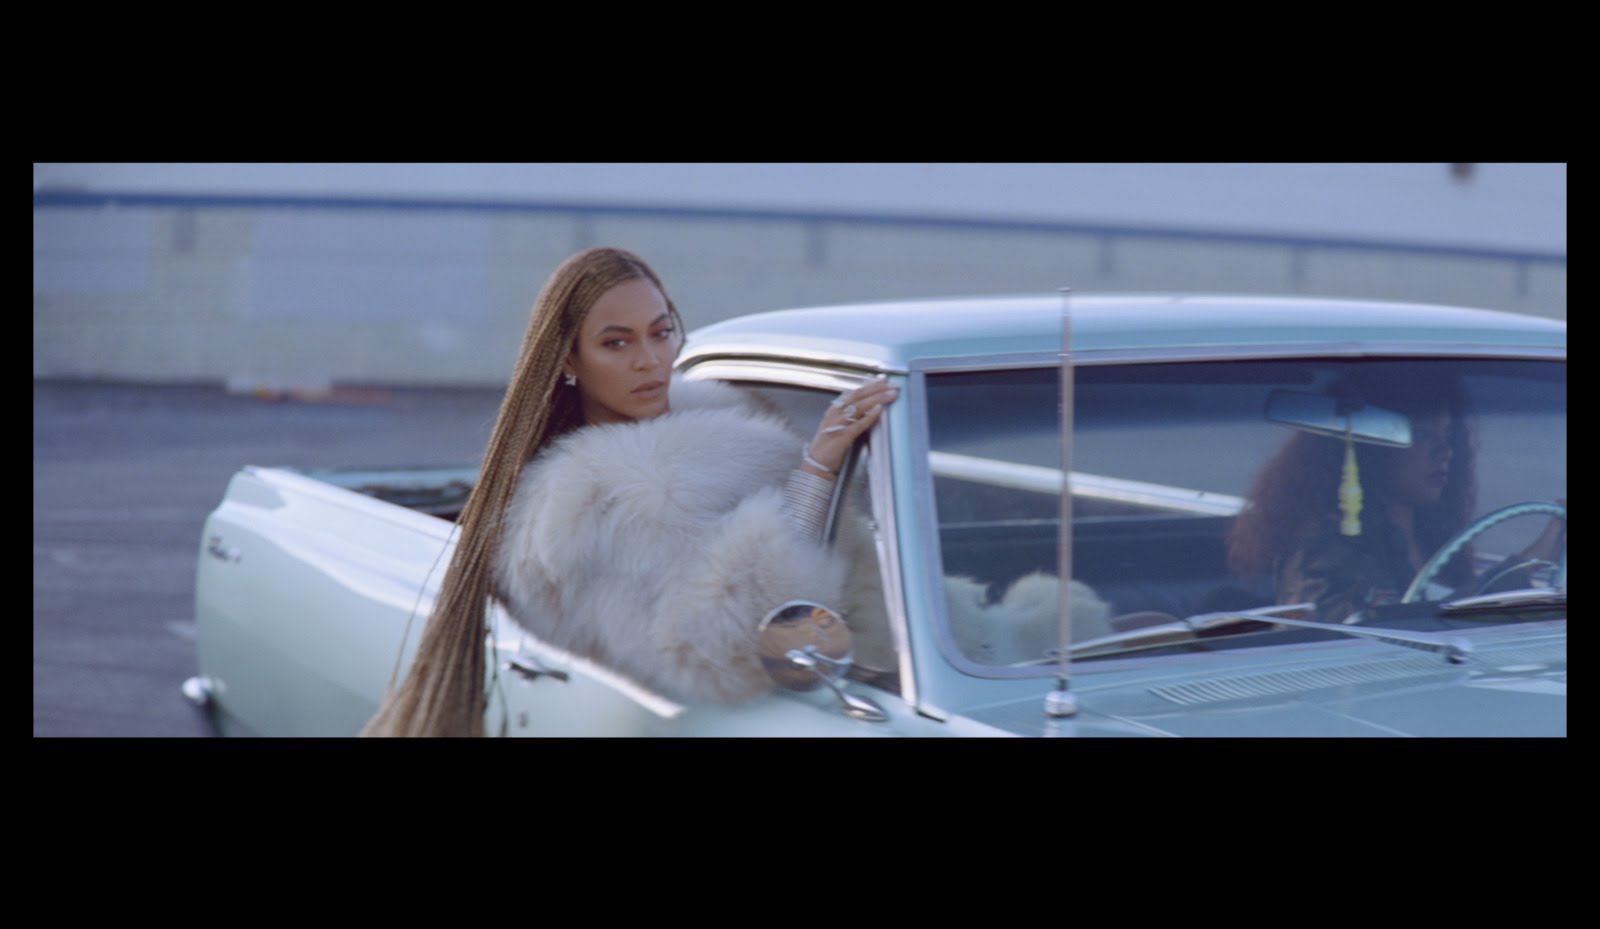 Formation (dirty), le nouveau clip de Beyoncé !